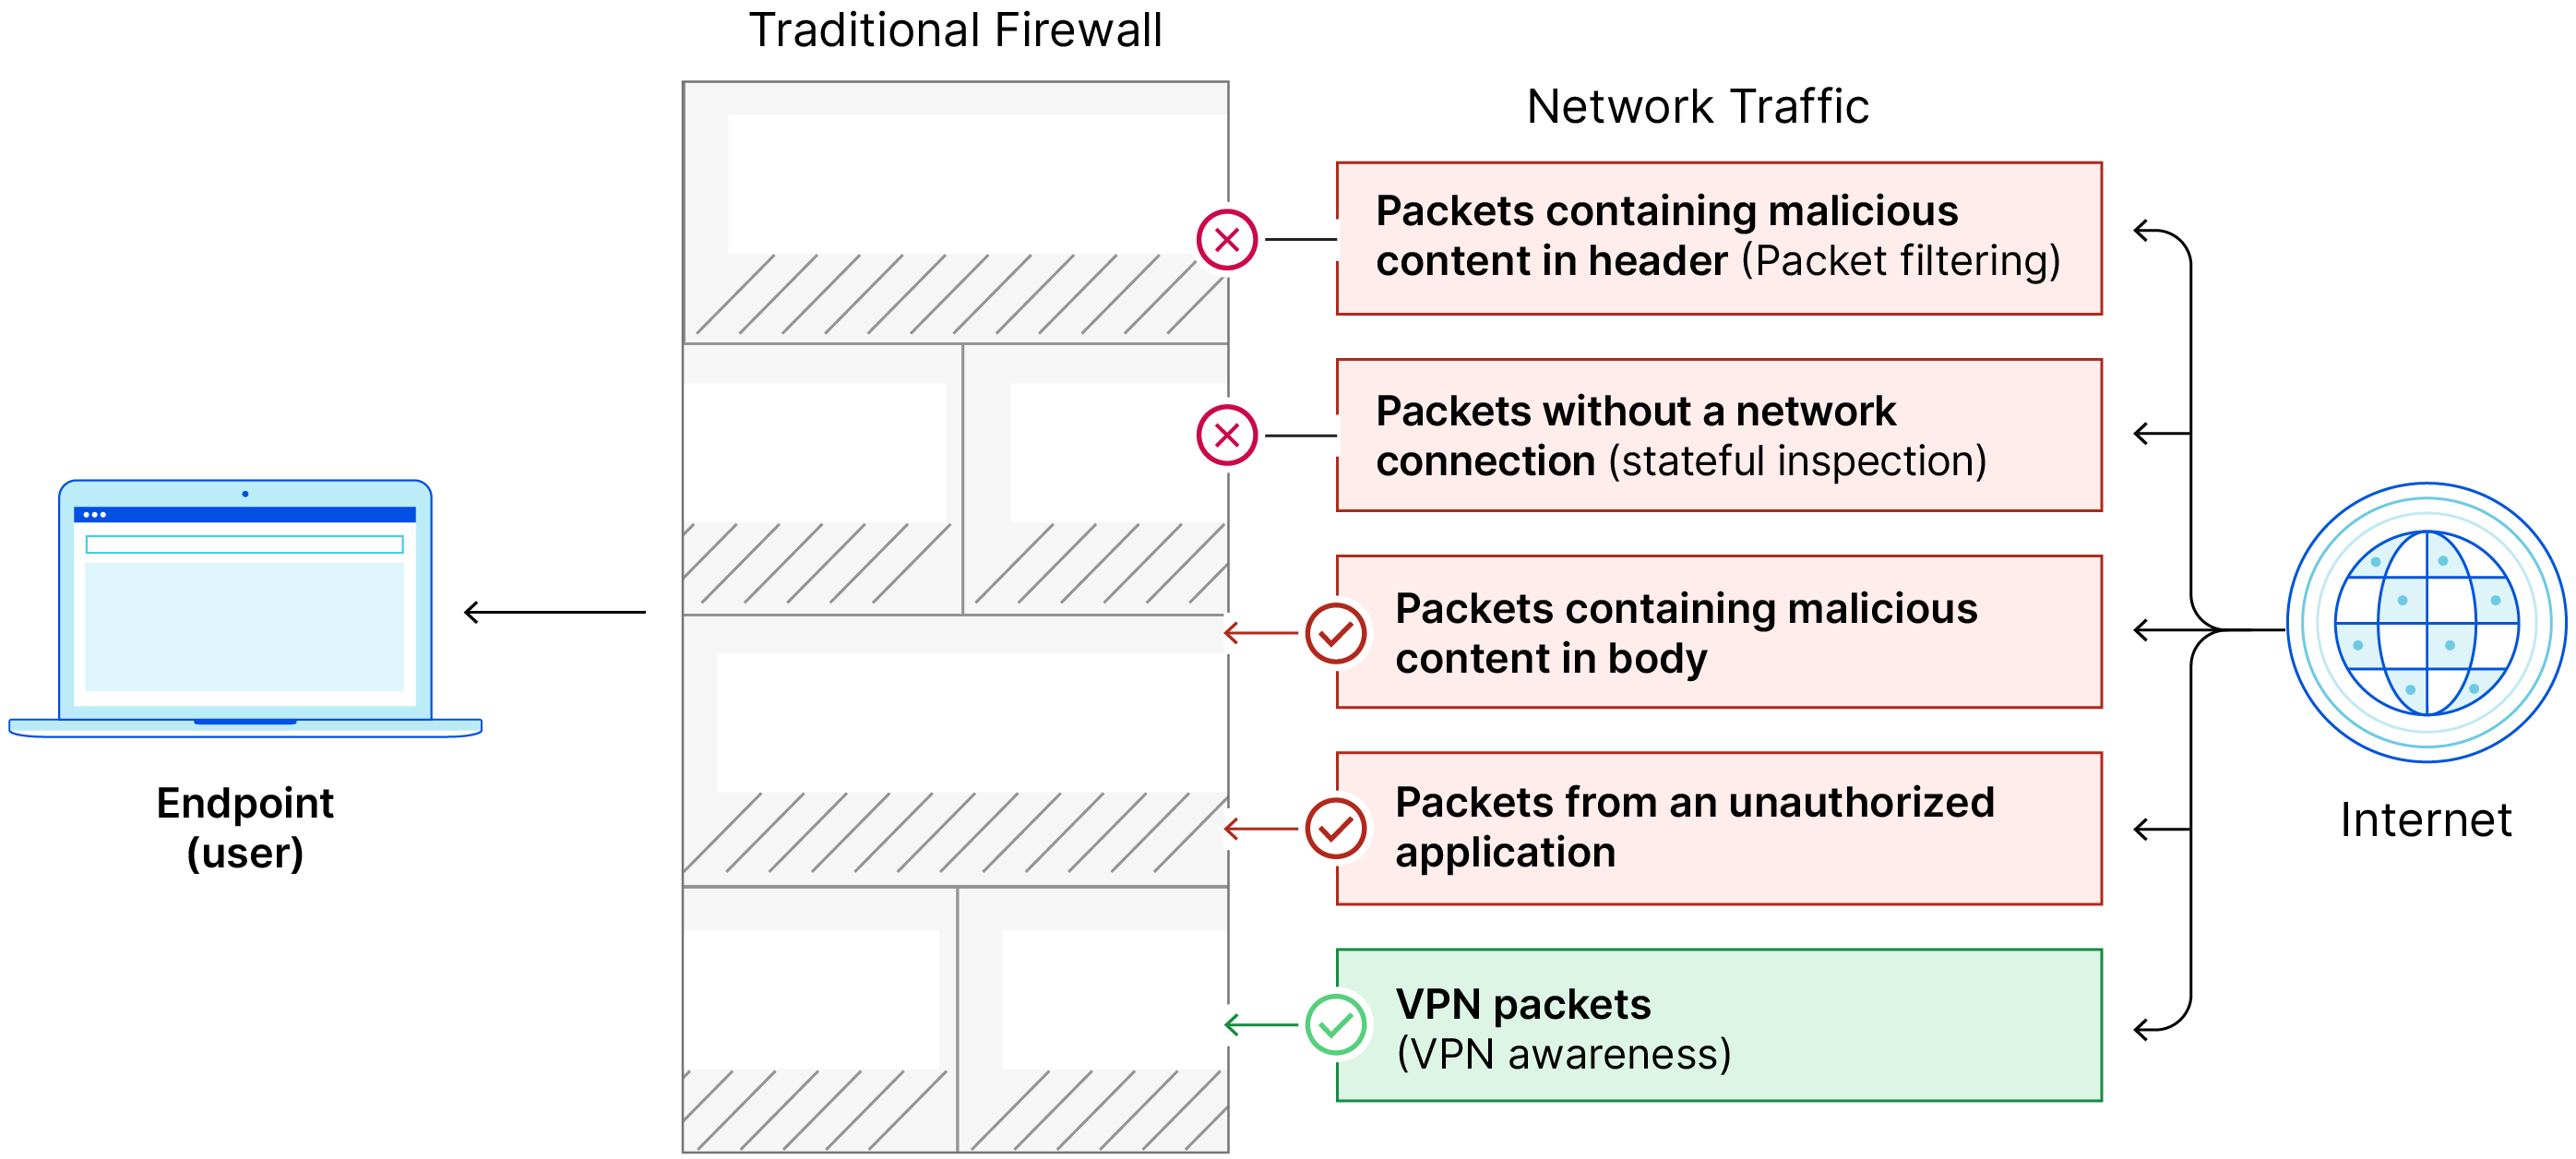 Eine herkömmliche Firewall hat keine NGFW-Funktionen (Next-Generation-Firewall) und lässt Pakete durch